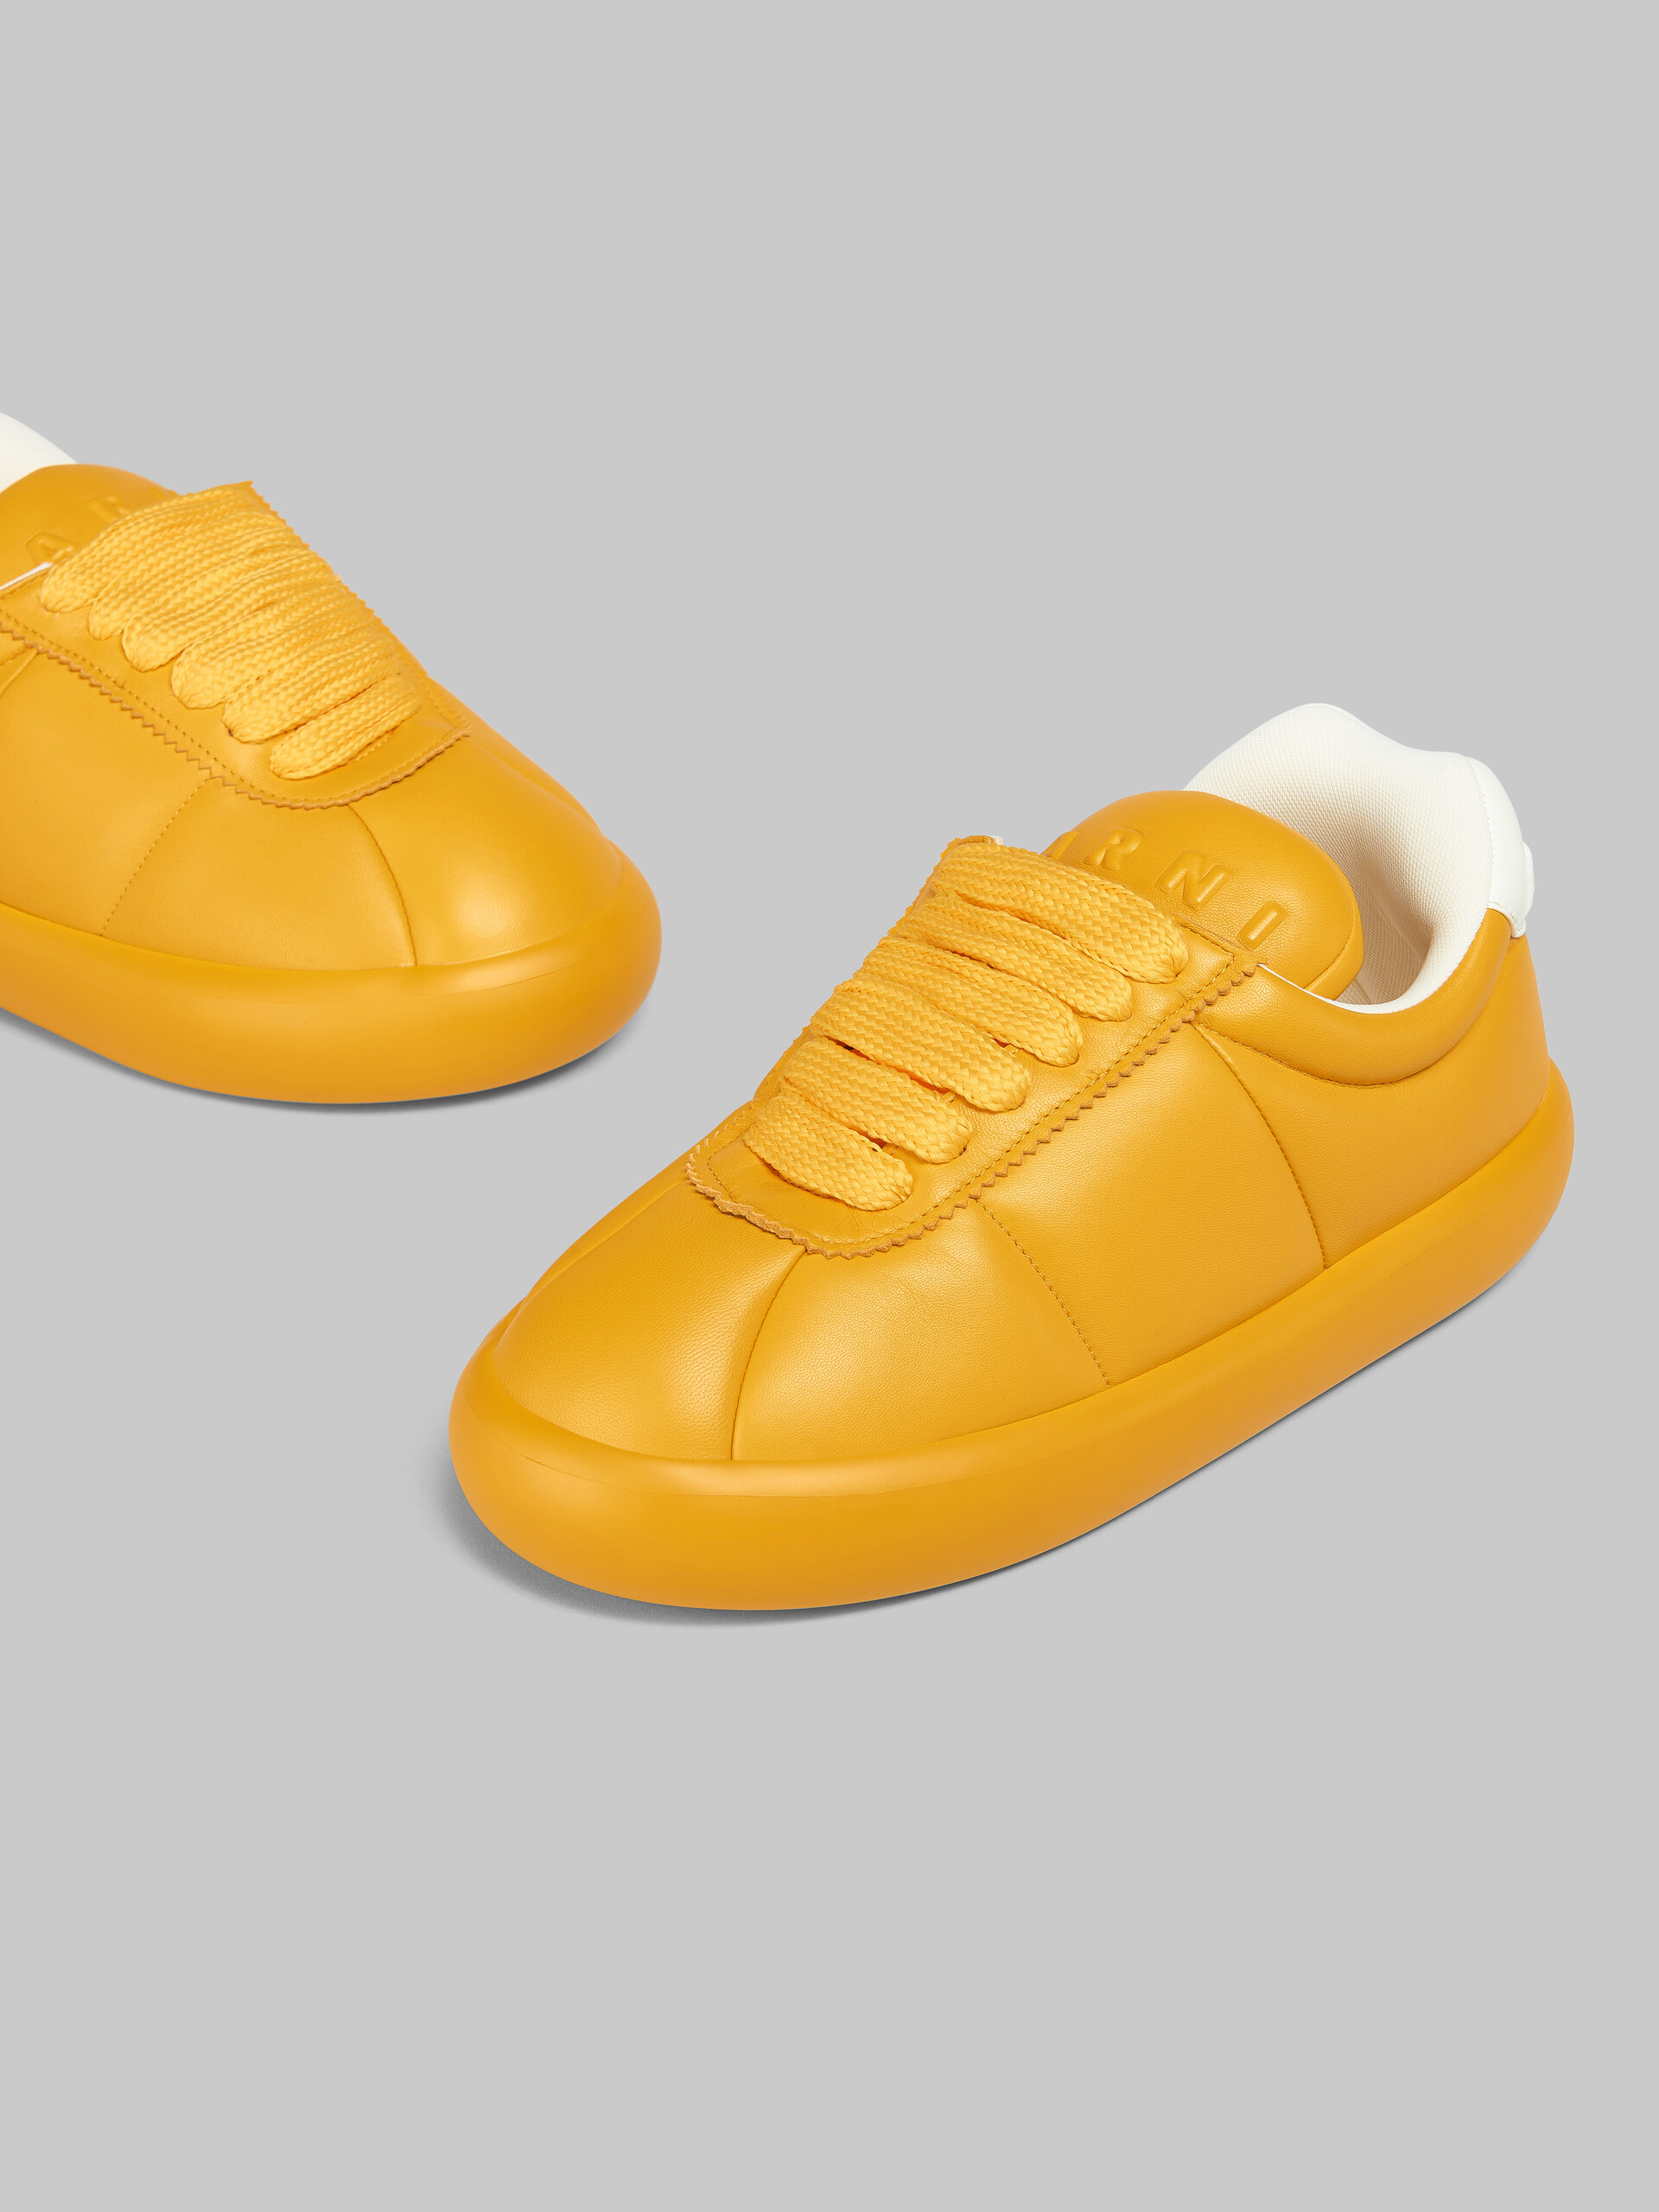 Sneaker BigFoot 2.0 in pelle nera - Sneakers - Image 5